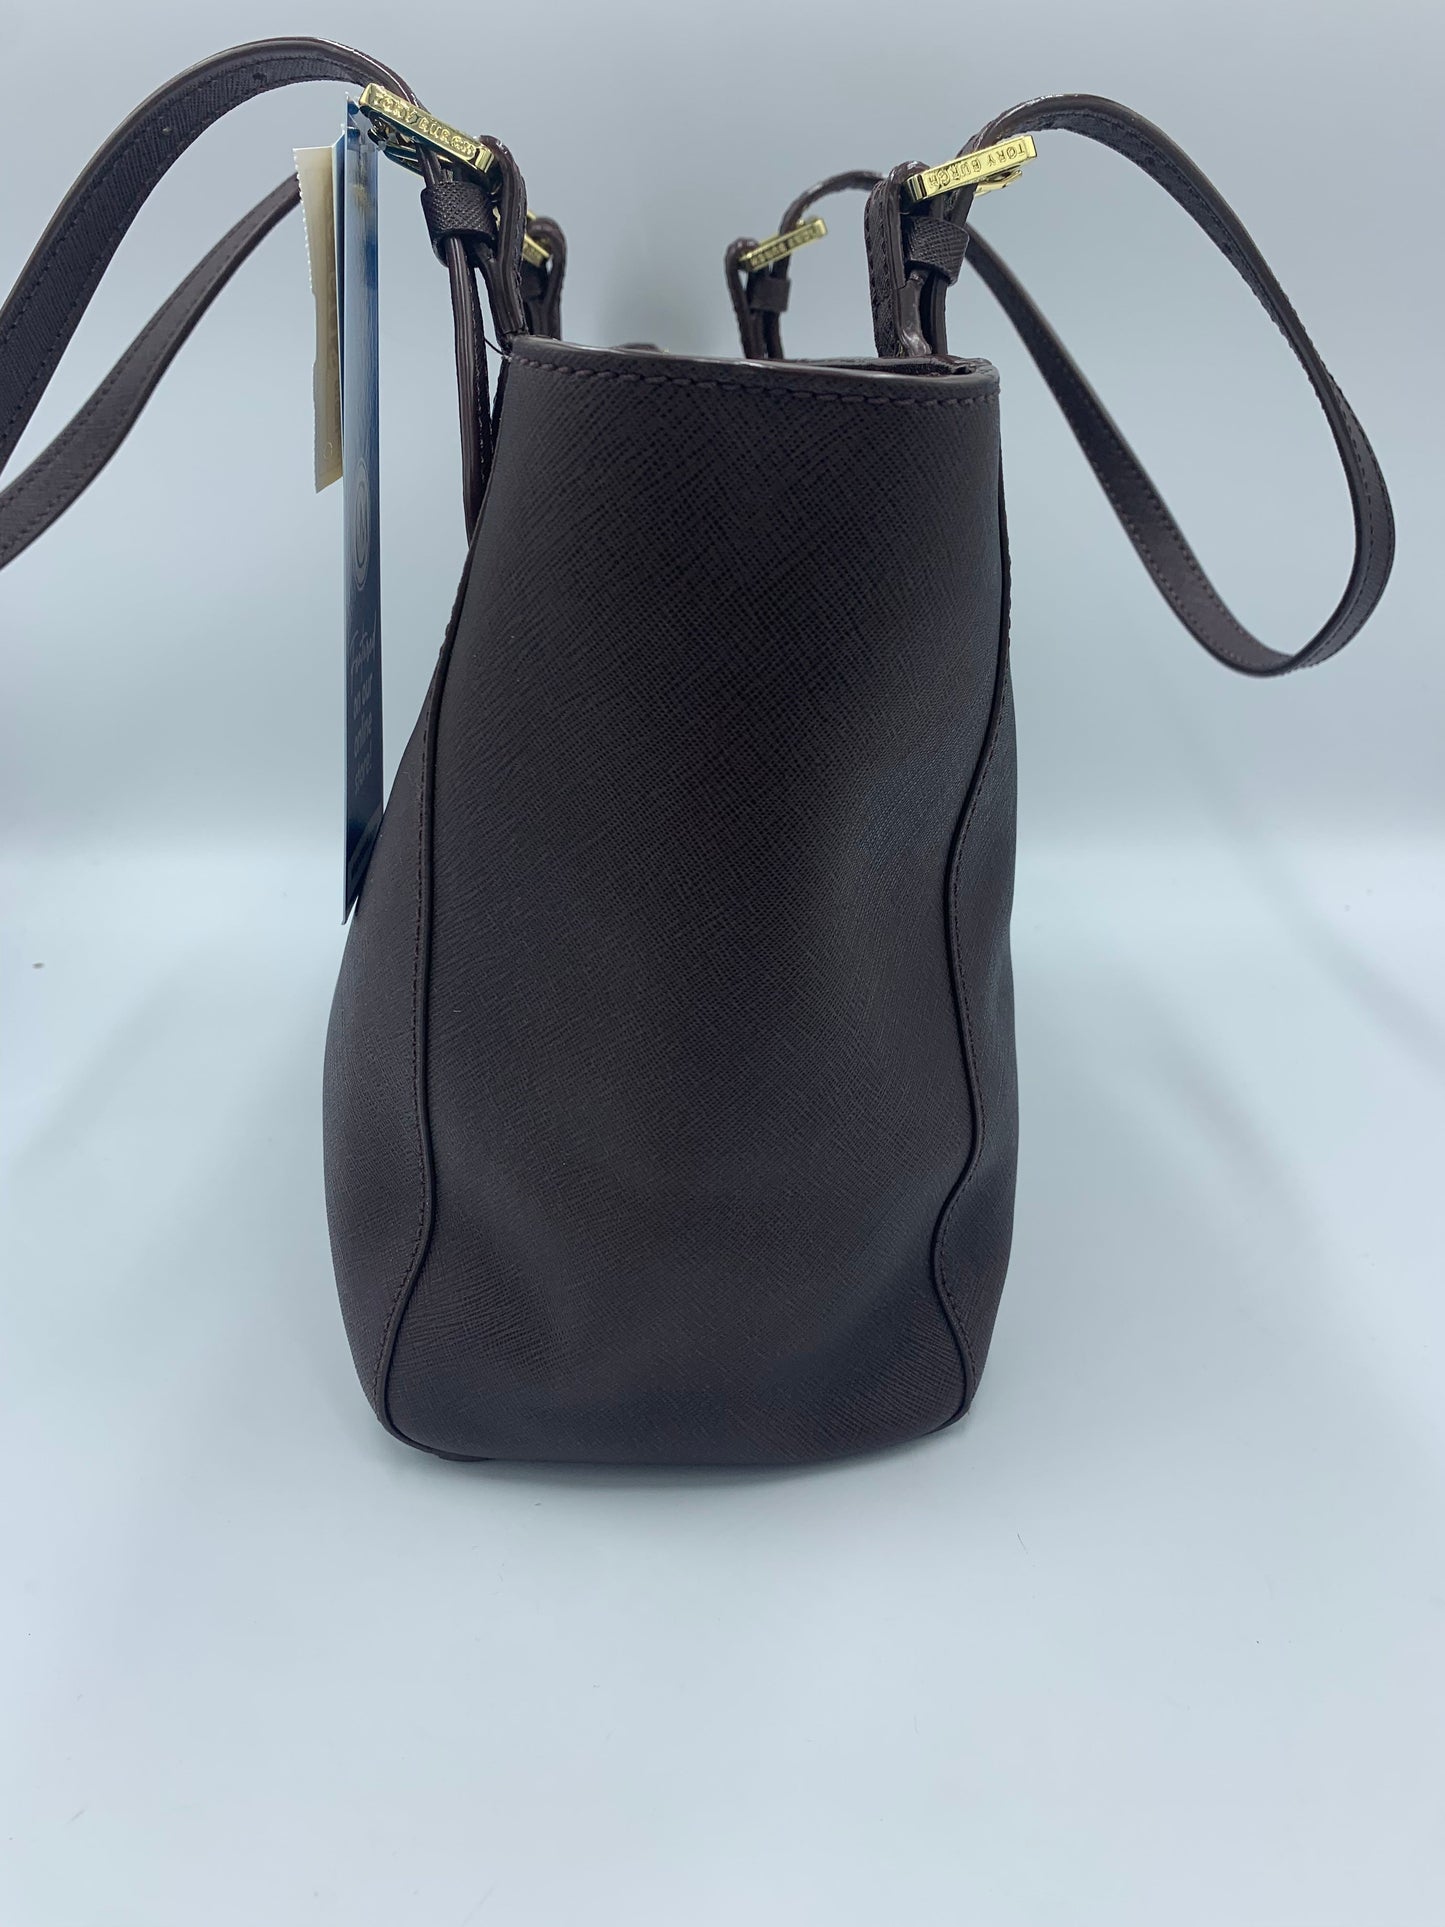 Tory Burch Zip Top Tote / Handbag Designer